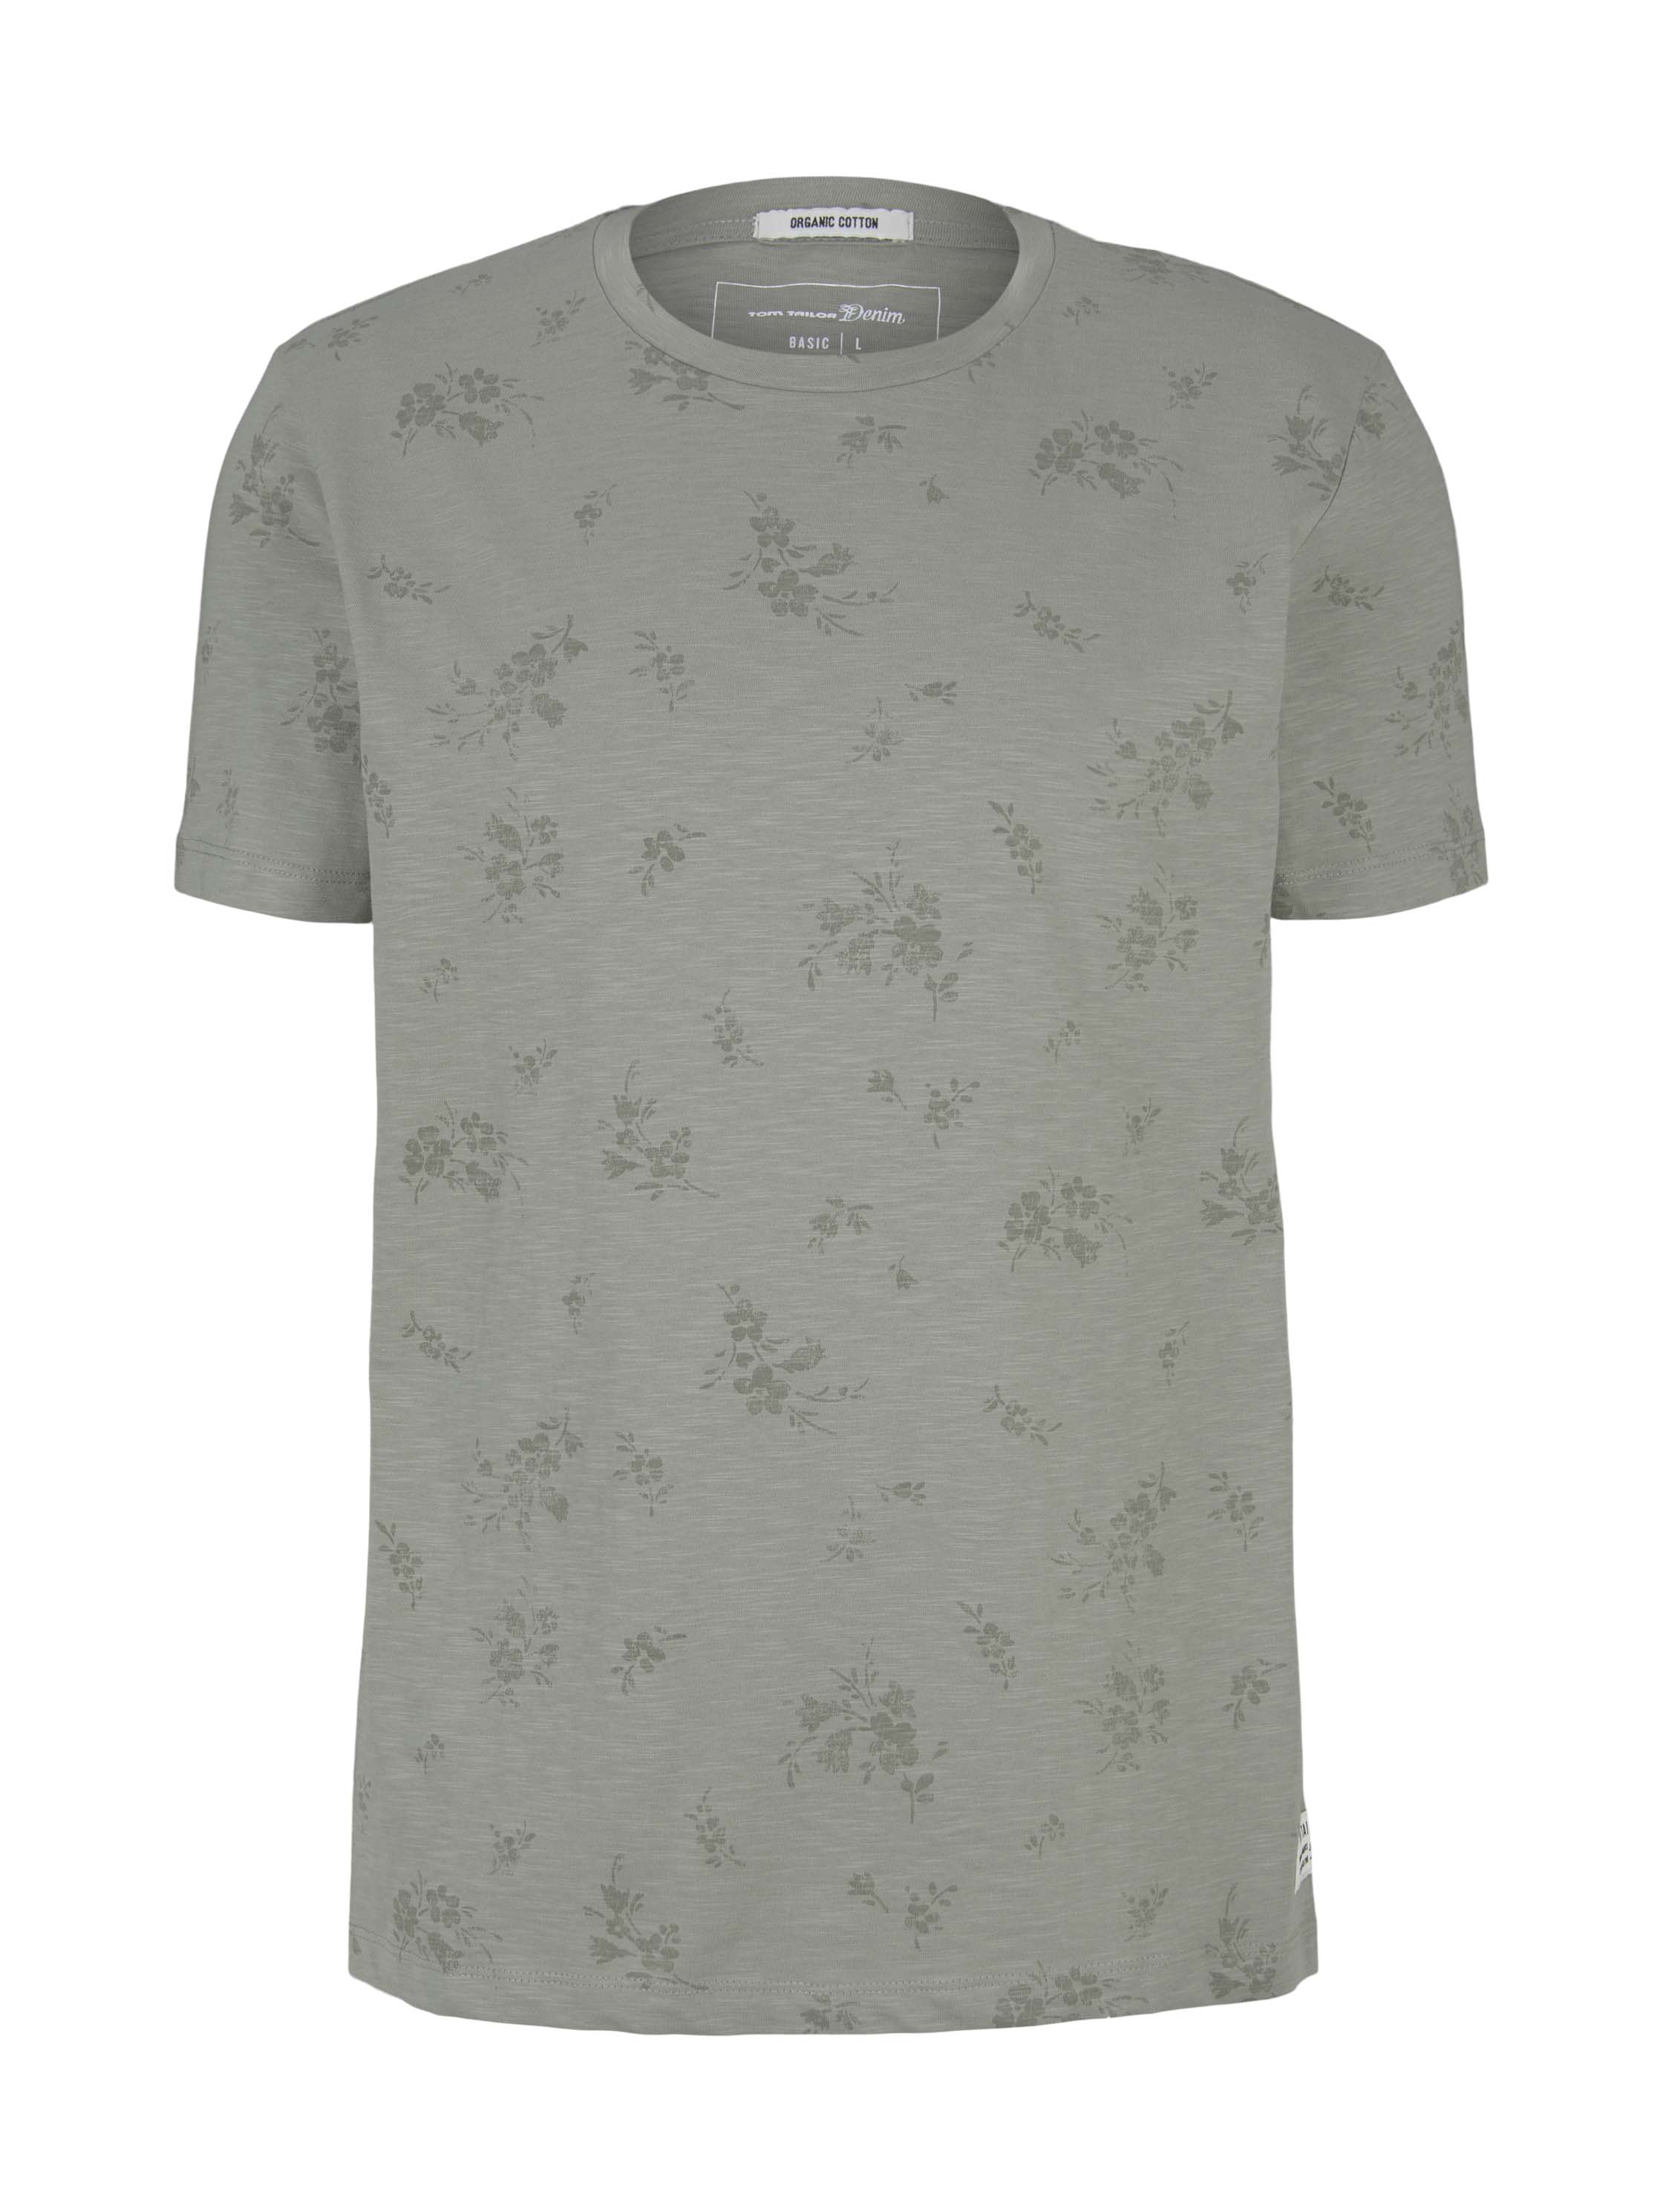 alloverprinted T-shirt, olive shredded flower print